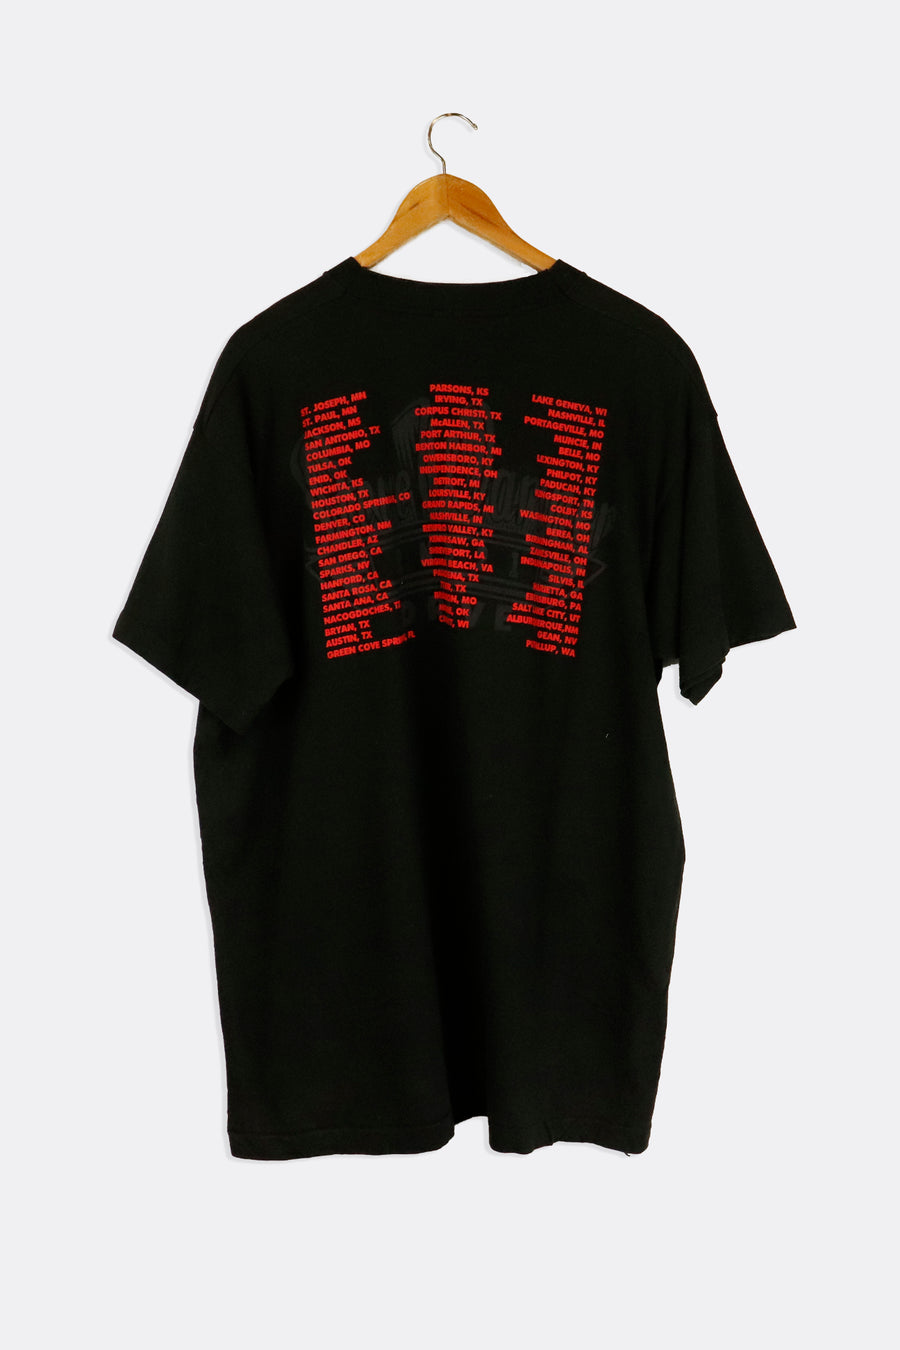 Vintage Steve Wariner Signed USA Tour Portrait T Shirt Sz XL